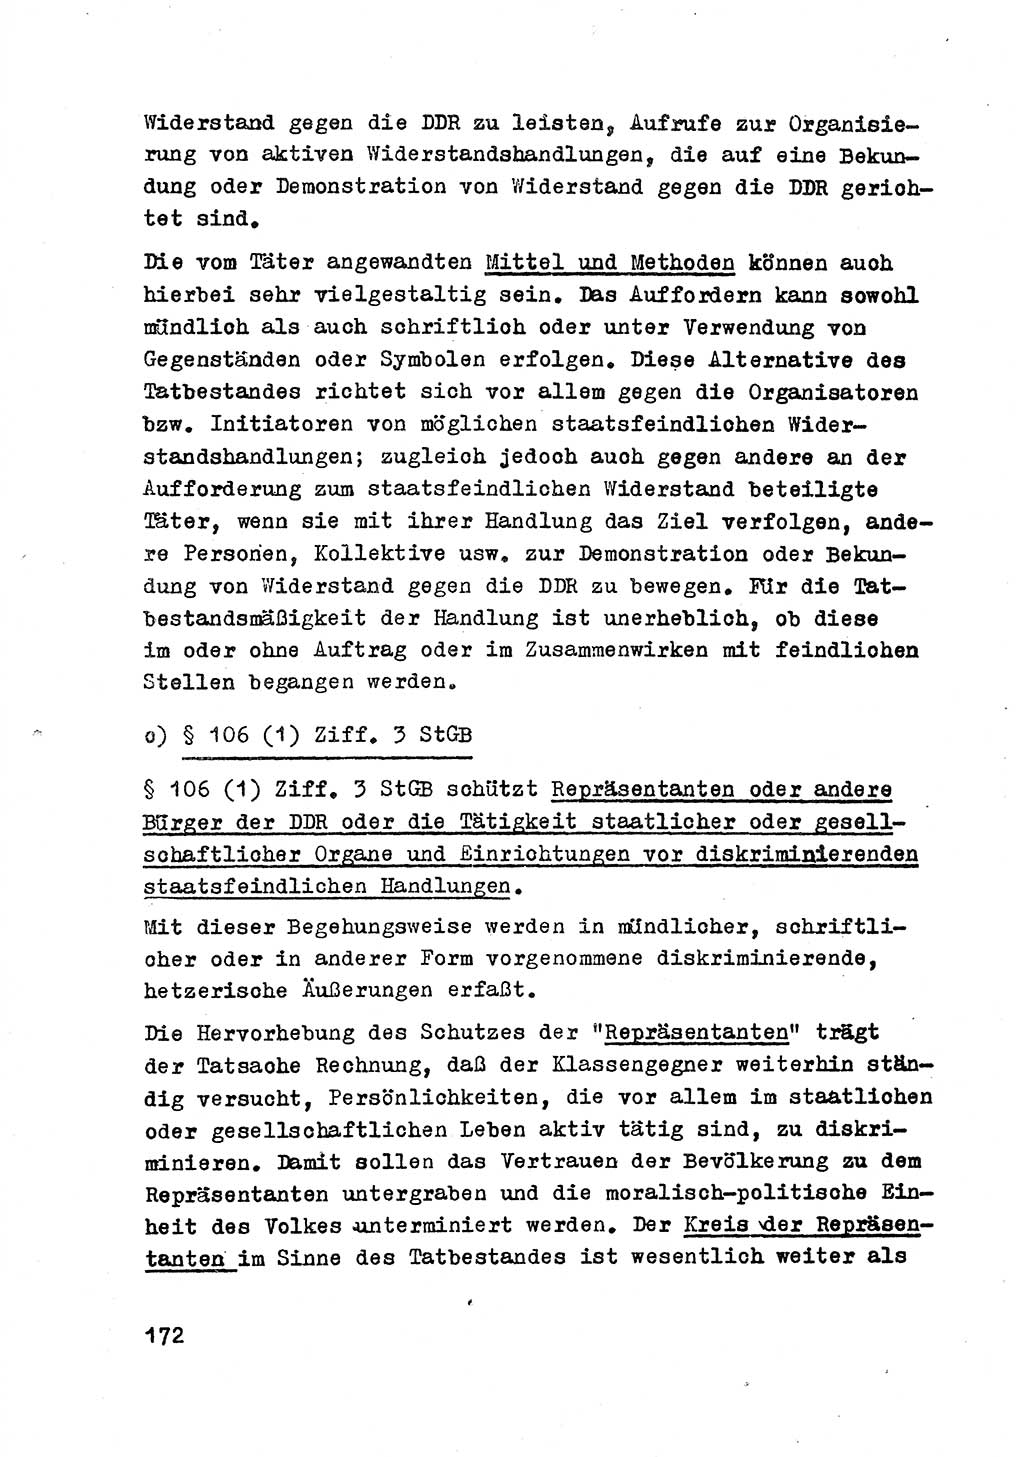 Strafrecht der DDR (Deutsche Demokratische Republik), Besonderer Teil, Lehrmaterial, Heft 2 1969, Seite 172 (Strafr. DDR BT Lehrmat. H. 2 1969, S. 172)